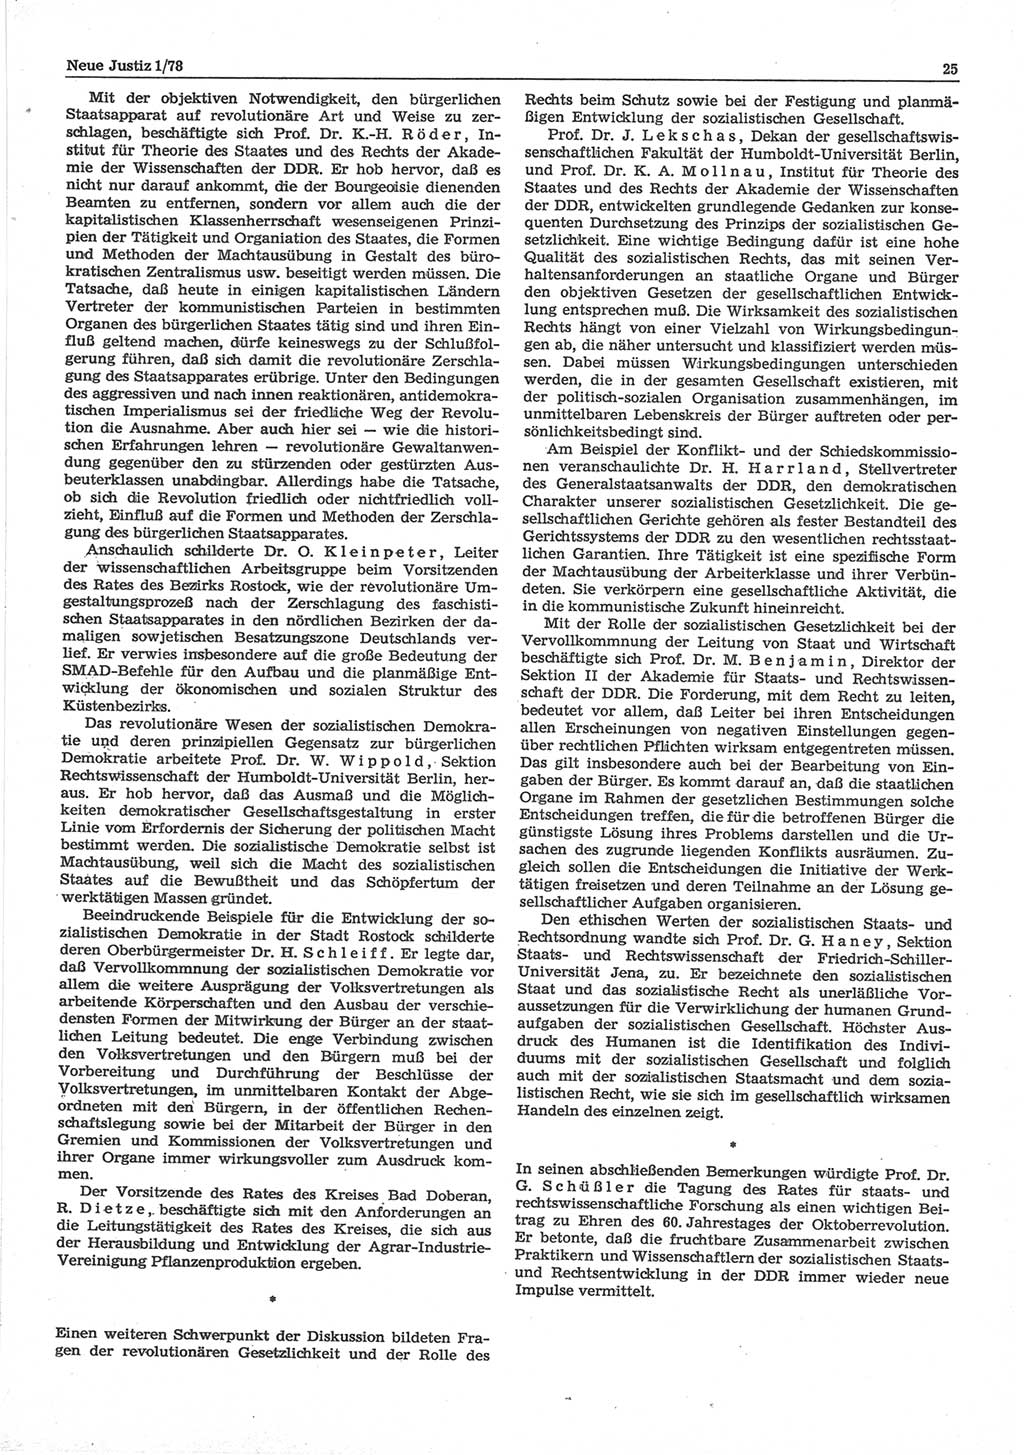 Neue Justiz (NJ), Zeitschrift für sozialistisches Recht und Gesetzlichkeit [Deutsche Demokratische Republik (DDR)], 32. Jahrgang 1978, Seite 25 (NJ DDR 1978, S. 25)